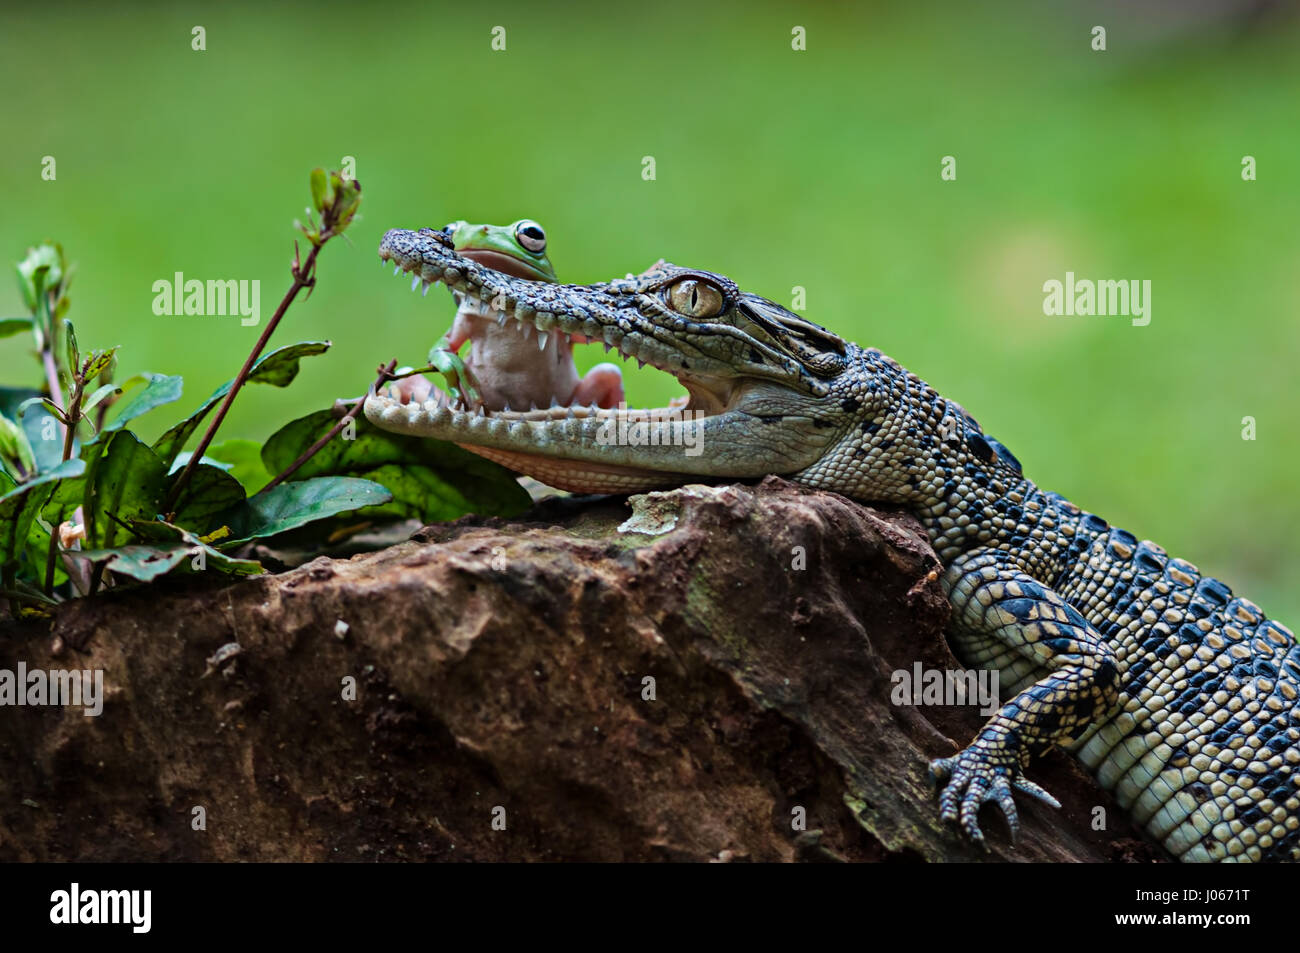 Le sud de JAKARTA, INDONÉSIE : des photos amusantes d'un brave grenouille d'arbre figurant à ouvrir les mâchoires d'un crocodile d'eau salée pour bébé ont été capturés par un photographe. La série d'images amusantes montrent l'improbable pals de détente sur une souche d'arbre comme la grenouille se tourne vers le croc avant de poser la tête sur le côté de la bouche ouverte de ce reptile. Une autre image montre comment les amphibiens grimpa sur l'agité la tête de crocodile. L'hilarant des coups de feu ont été prises par Roni Kurniawan (26) dans le sud de Jakarta, Indonésie. Roni utilisé un Canon 600D appareil photo pour capturer la surprenante rencontre. Roni Kurniawan / mediadr Banque D'Images